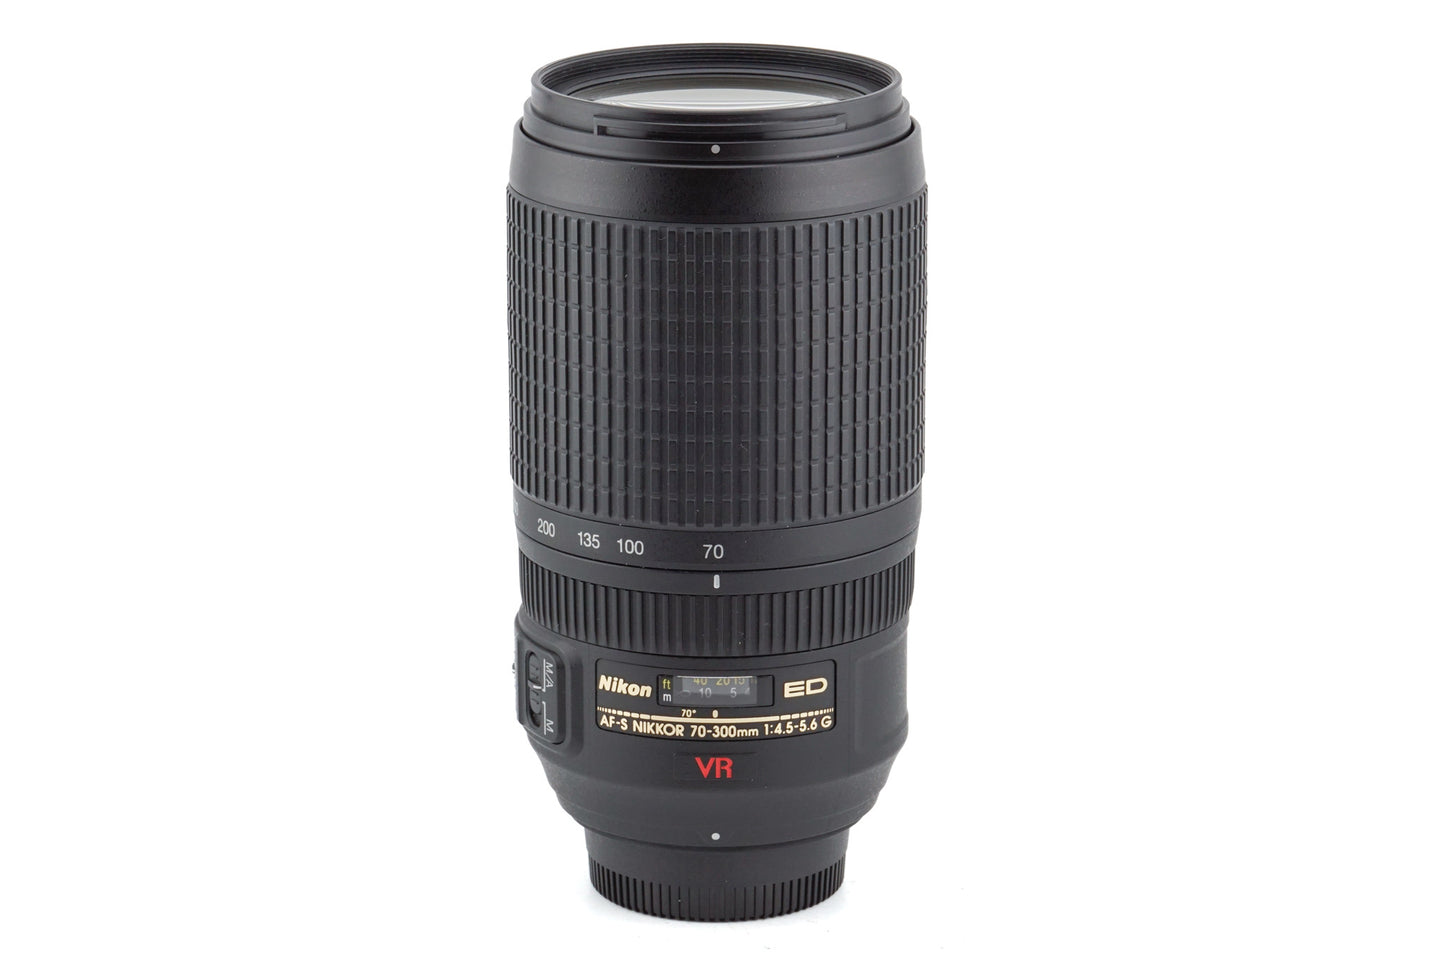 Nikon 70-300mm f4.5-5.6 G ED VR AF-S Nikkor - Lens